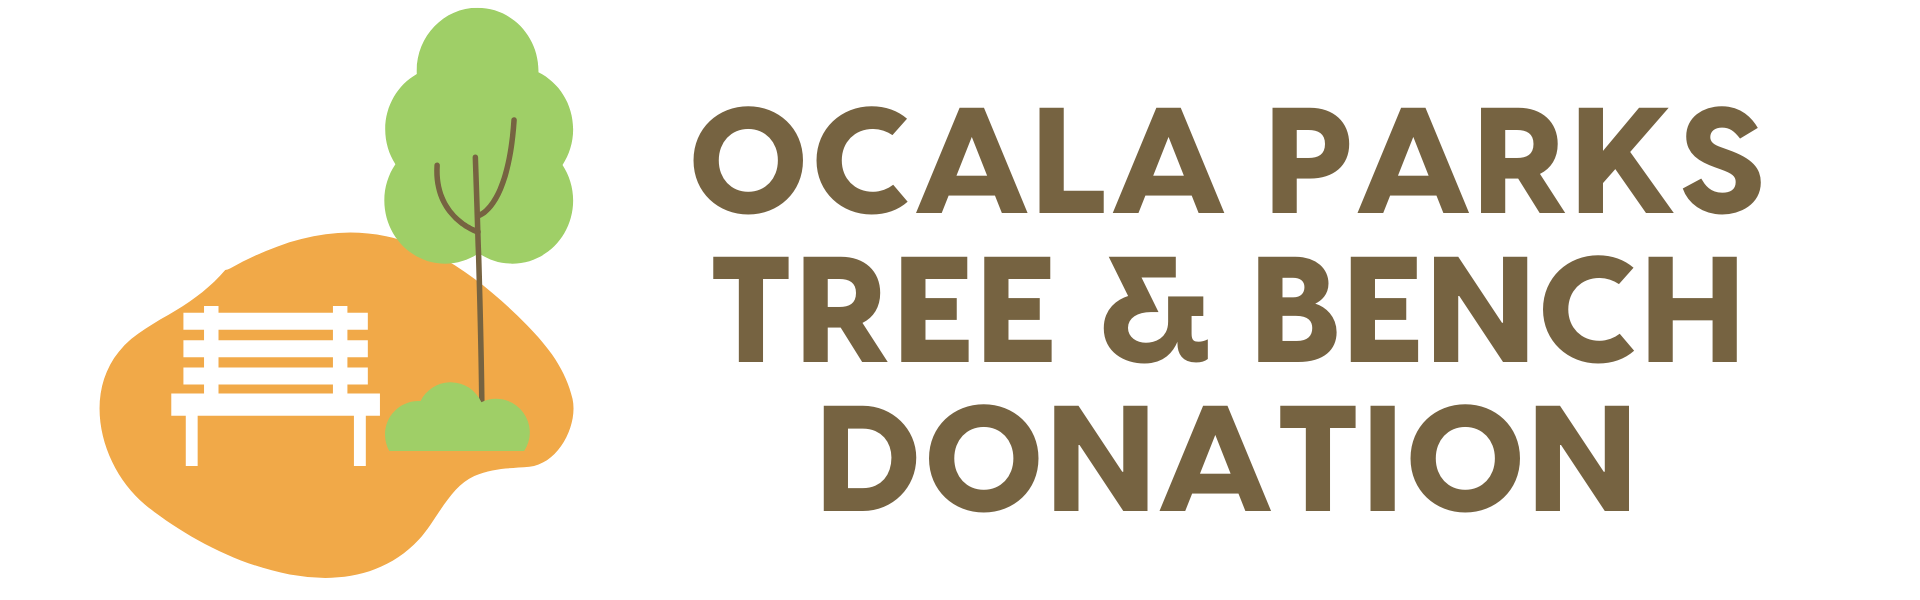 Ocala Park Tree & Bench Donation